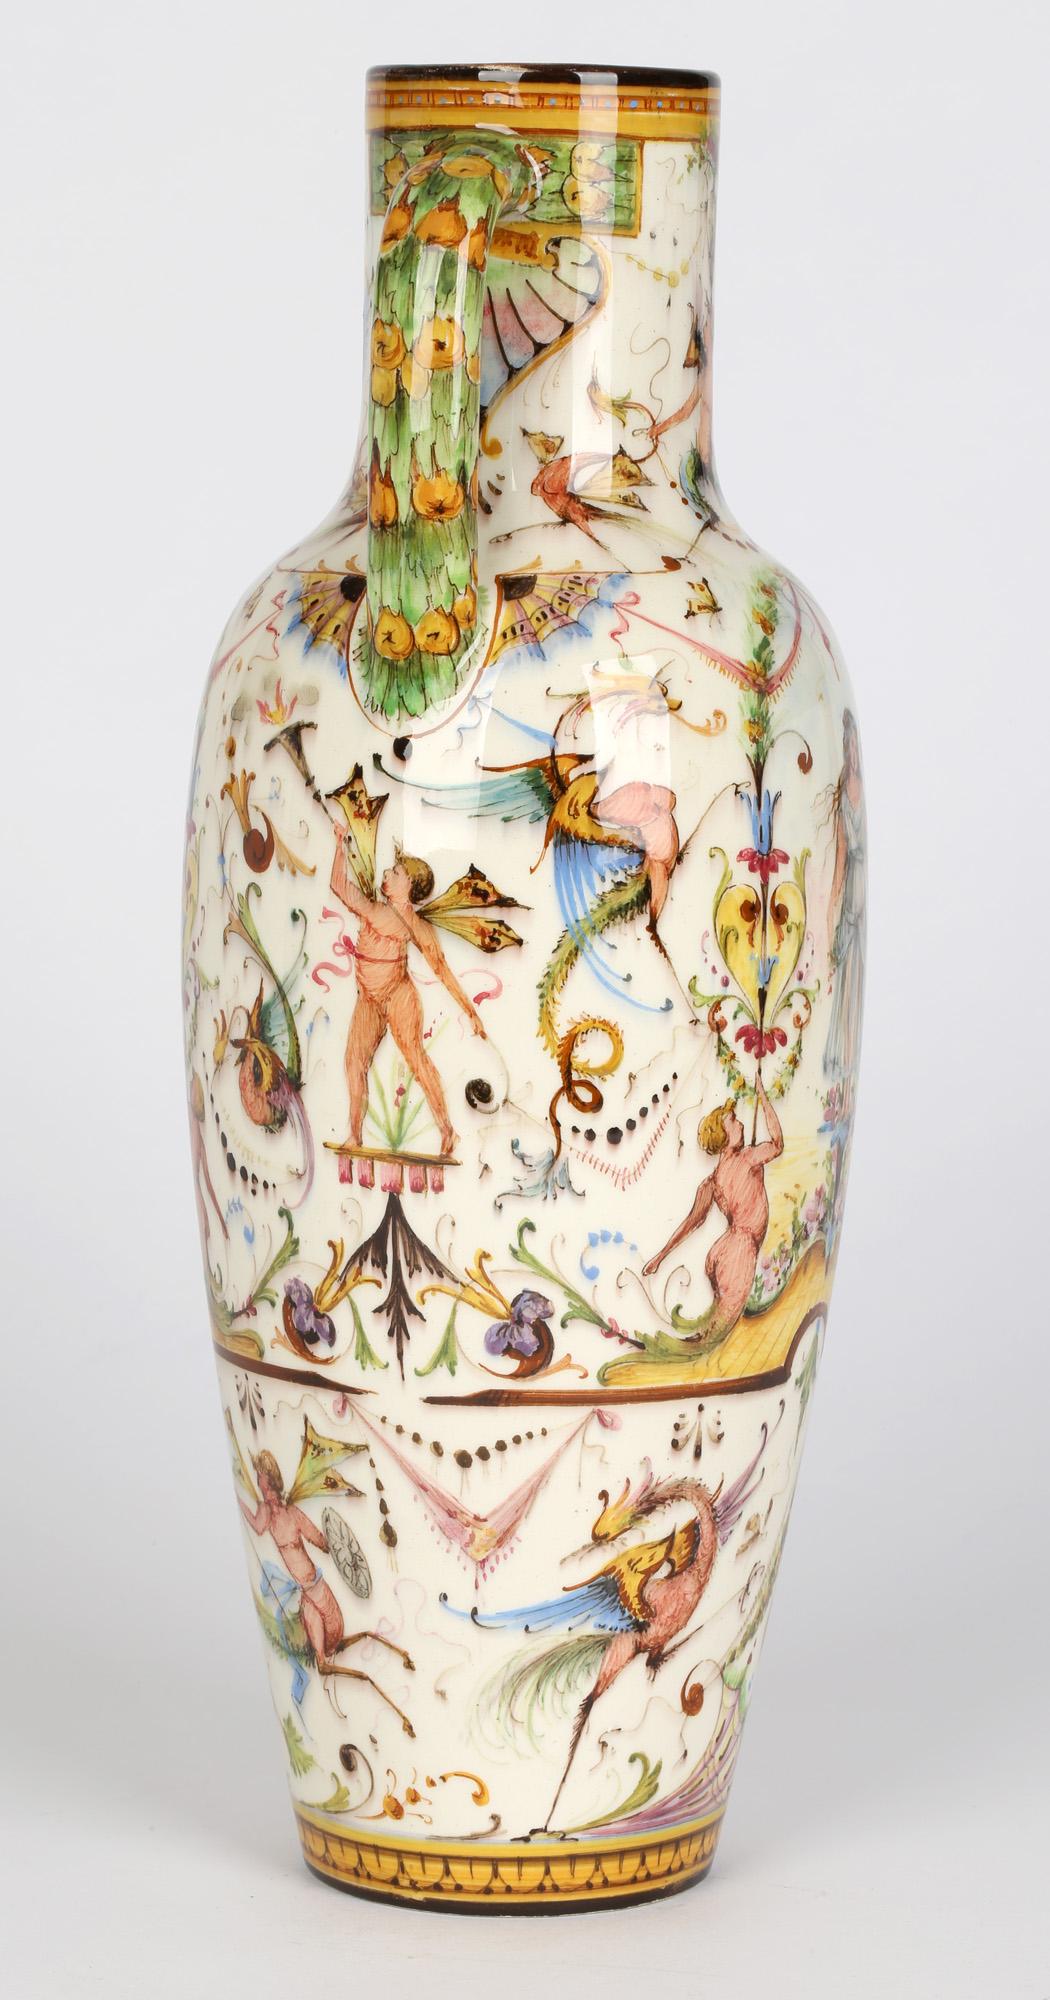 Un exceptionnel et rare vase en majolique de Vallauris à deux anses, peint à la main avec des figures de style classique par Delphin Massier et datant d'environ 1890. Ce grand et élégant vase élancé est légèrement empoté avec un corps bulbeux